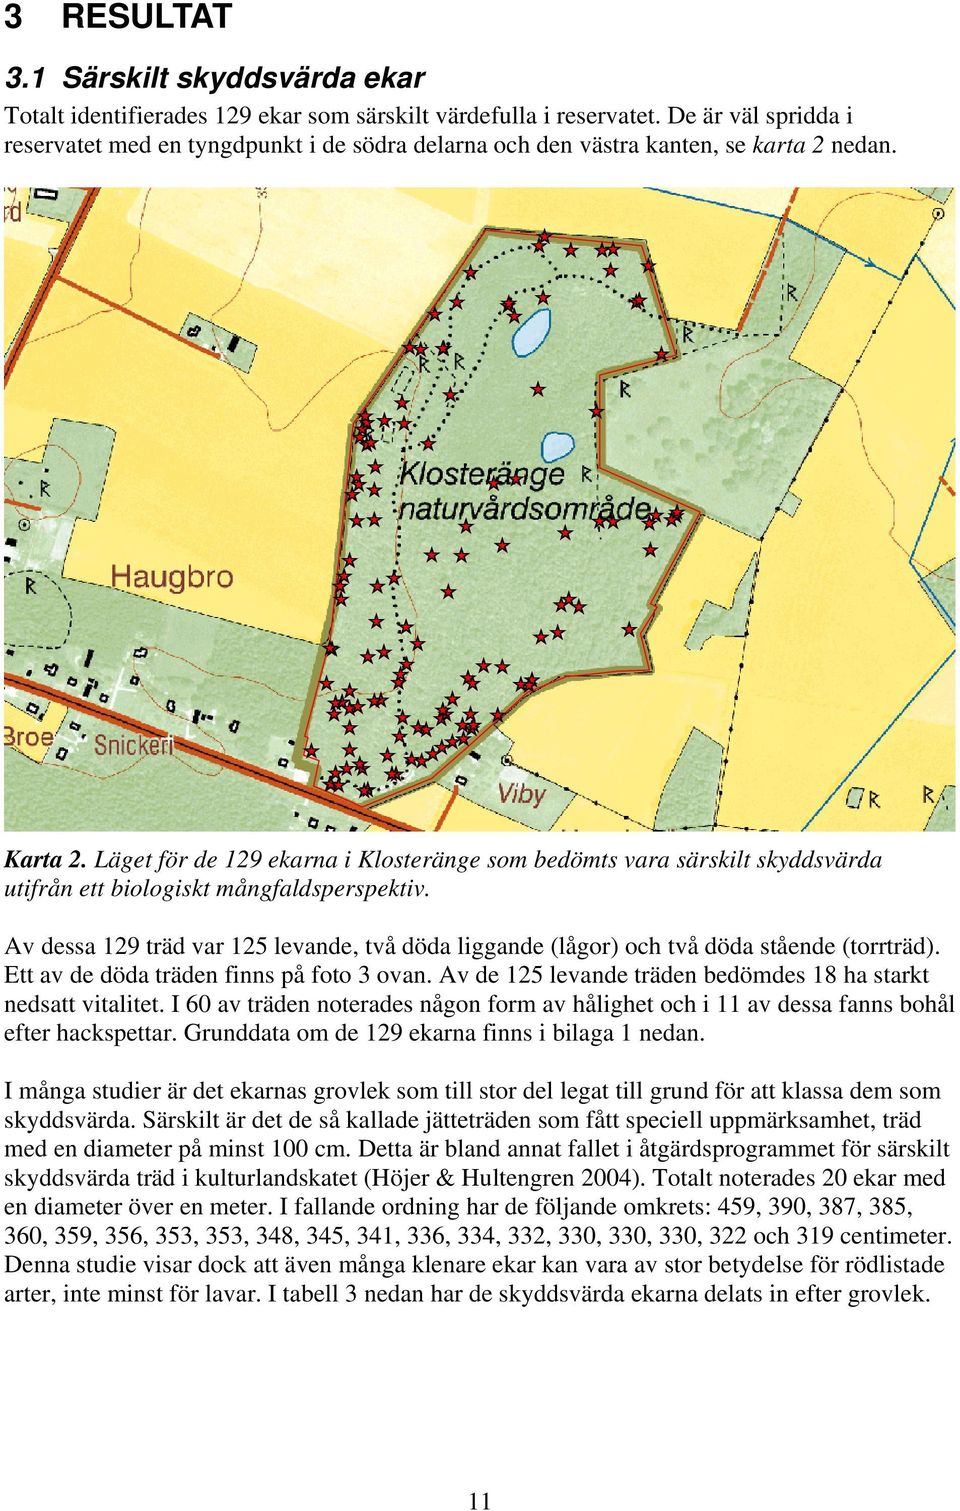 Läget för de 129 ekarna i Klosteränge som bedömts vara särskilt skyddsvärda utifrån ett biologiskt mångfaldsperspektiv.